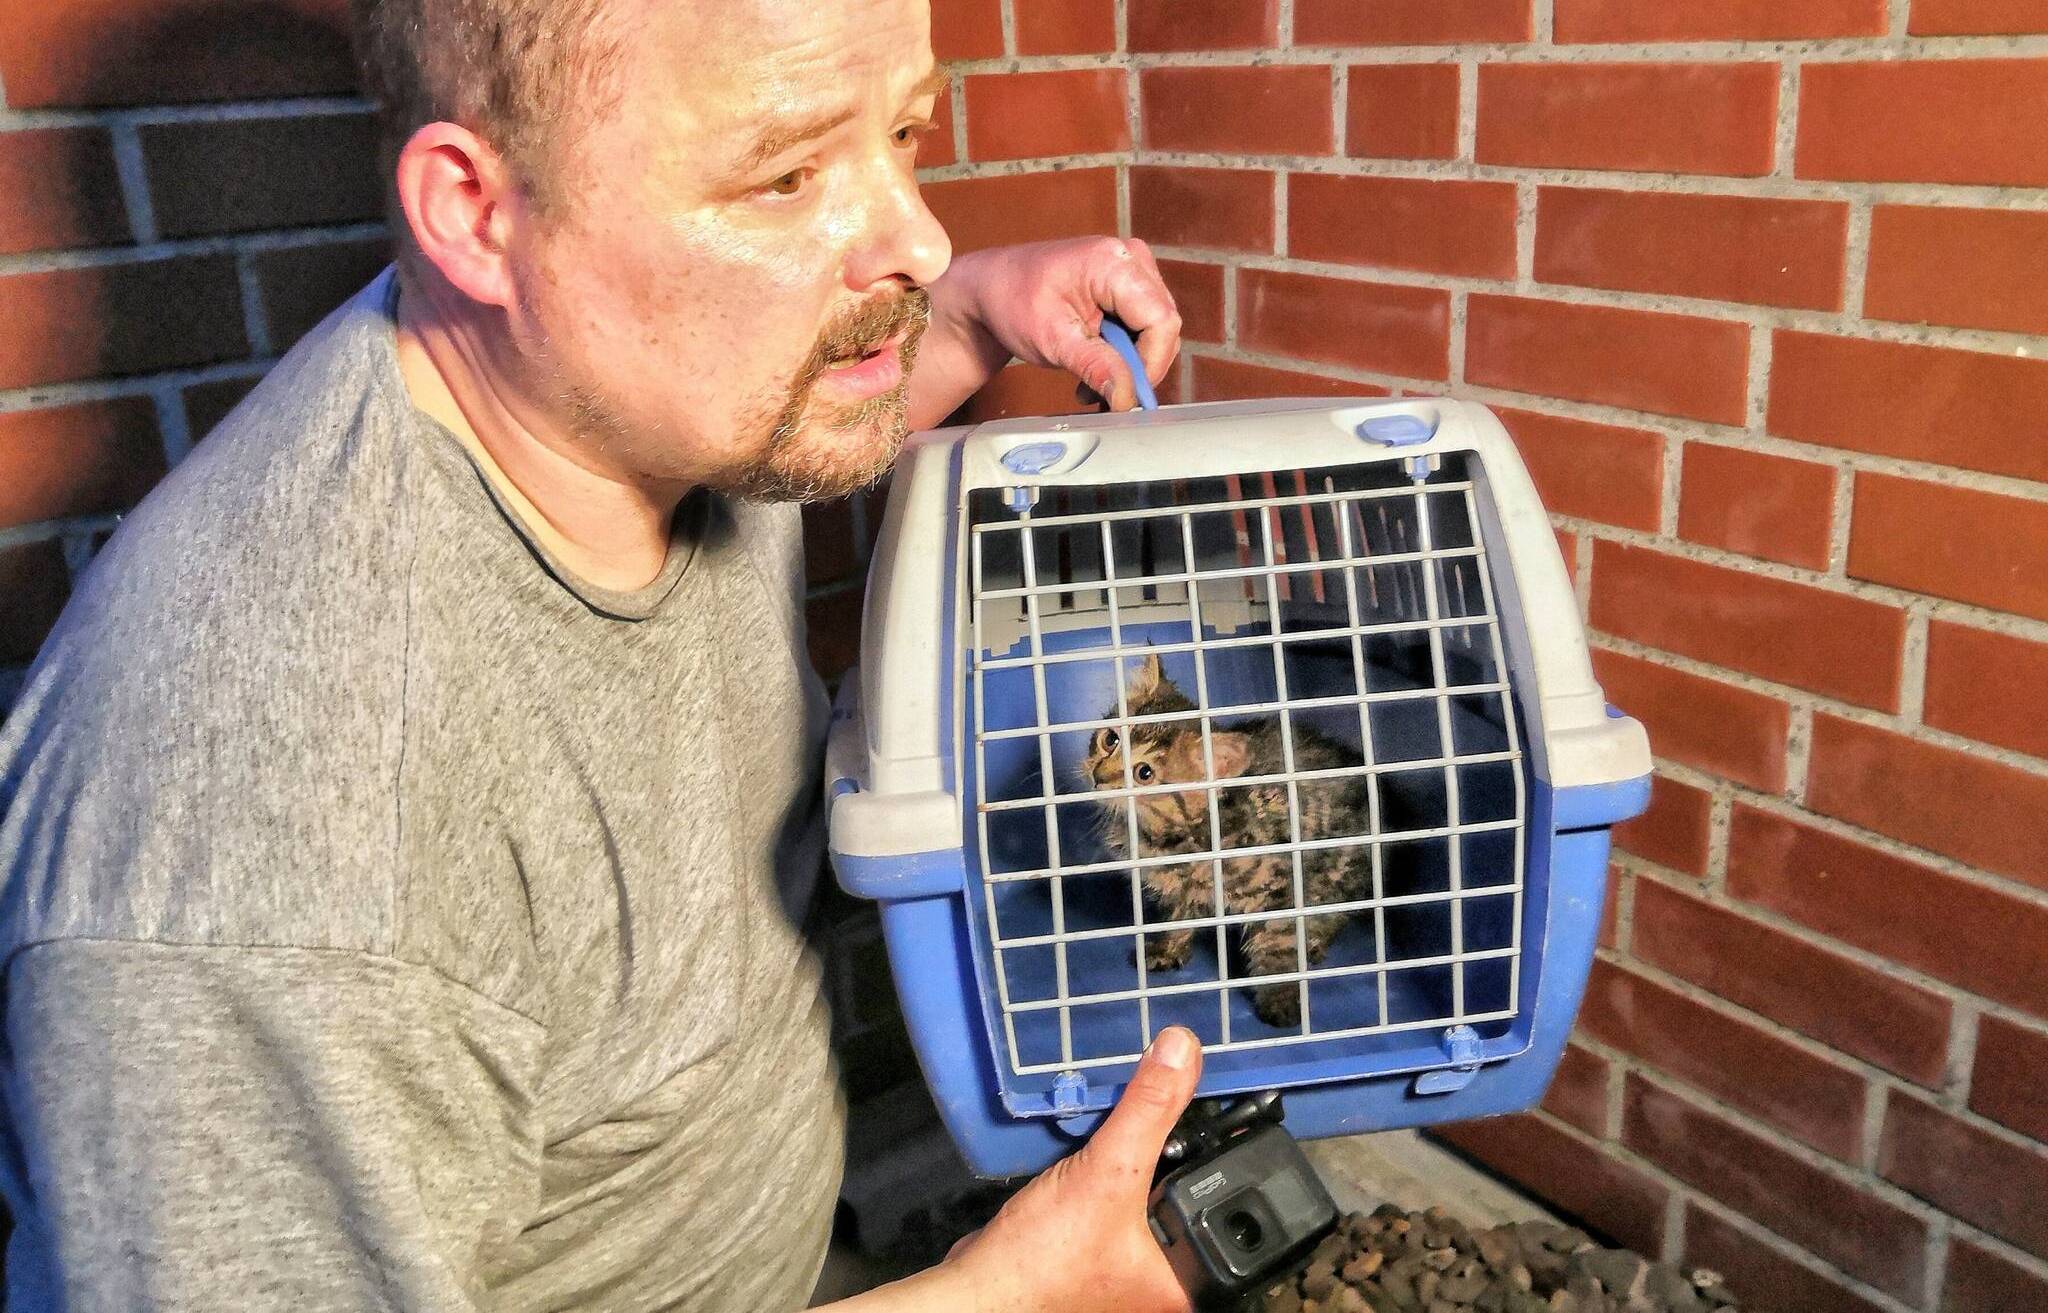 Katzenbaby nach 5 Stunden aus Rohr gerettet